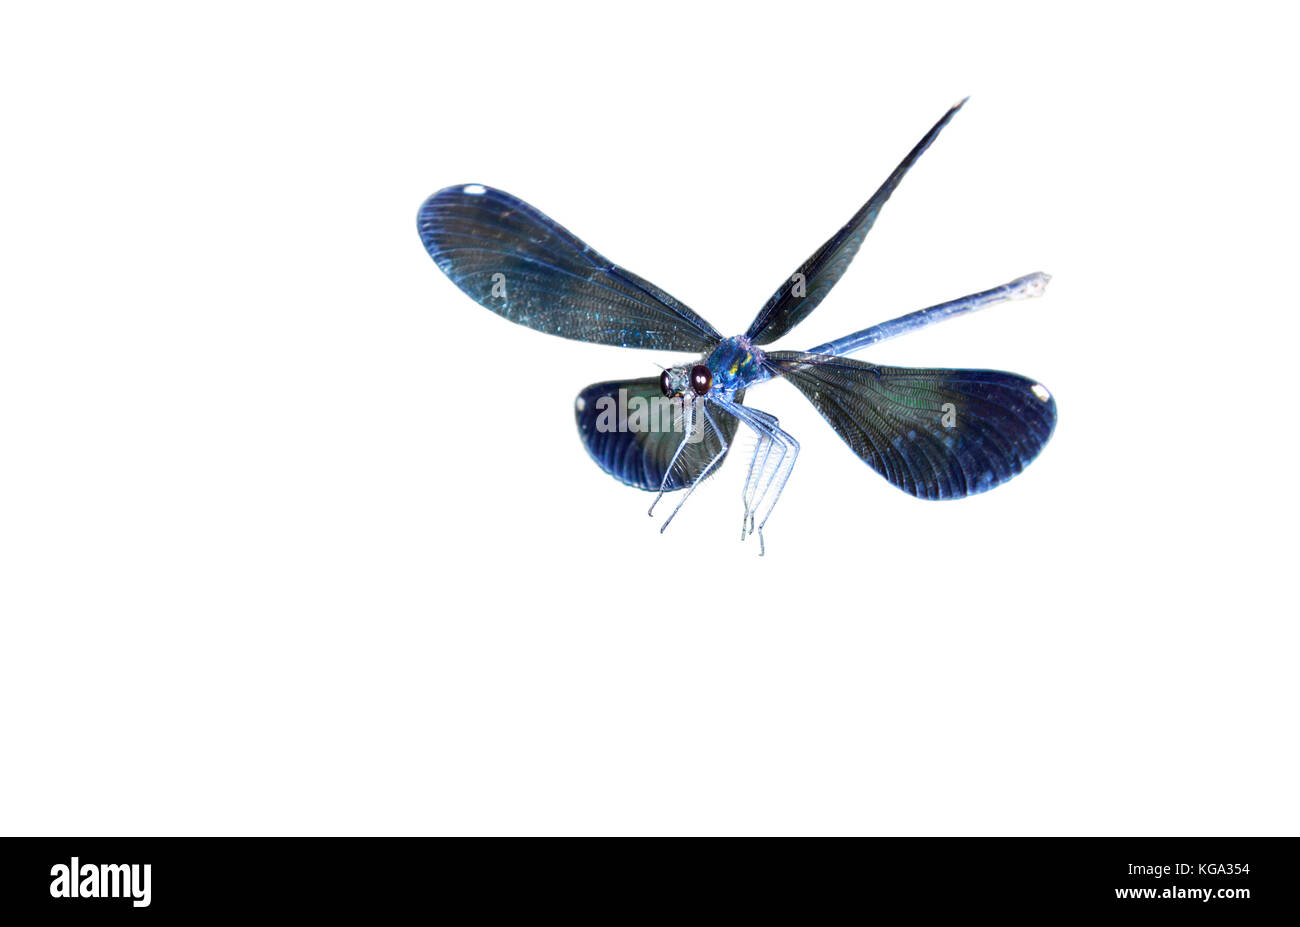 Ebony jewelwing (Calopteryx maculata) flying, isolated on white background. Stock Photo